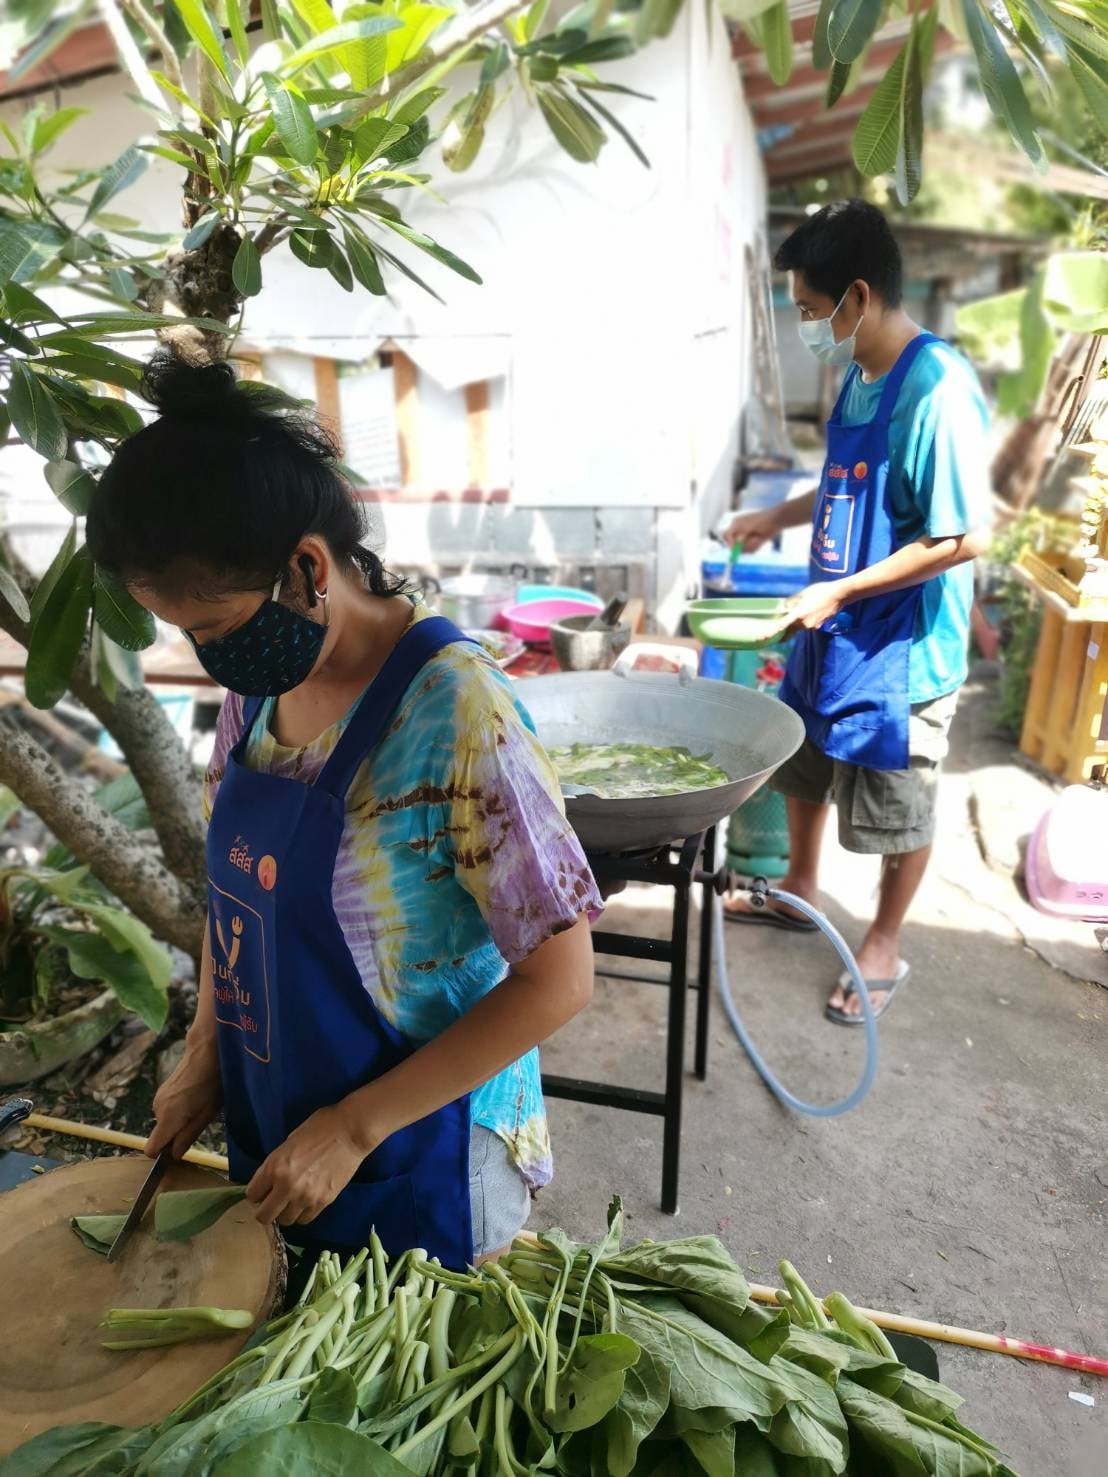 หนุนเปิดครัวกลางชุมชนปันกันอิ่ม แหล่งอาหารยั่งยืนยุคโควิด-19 thaihealth